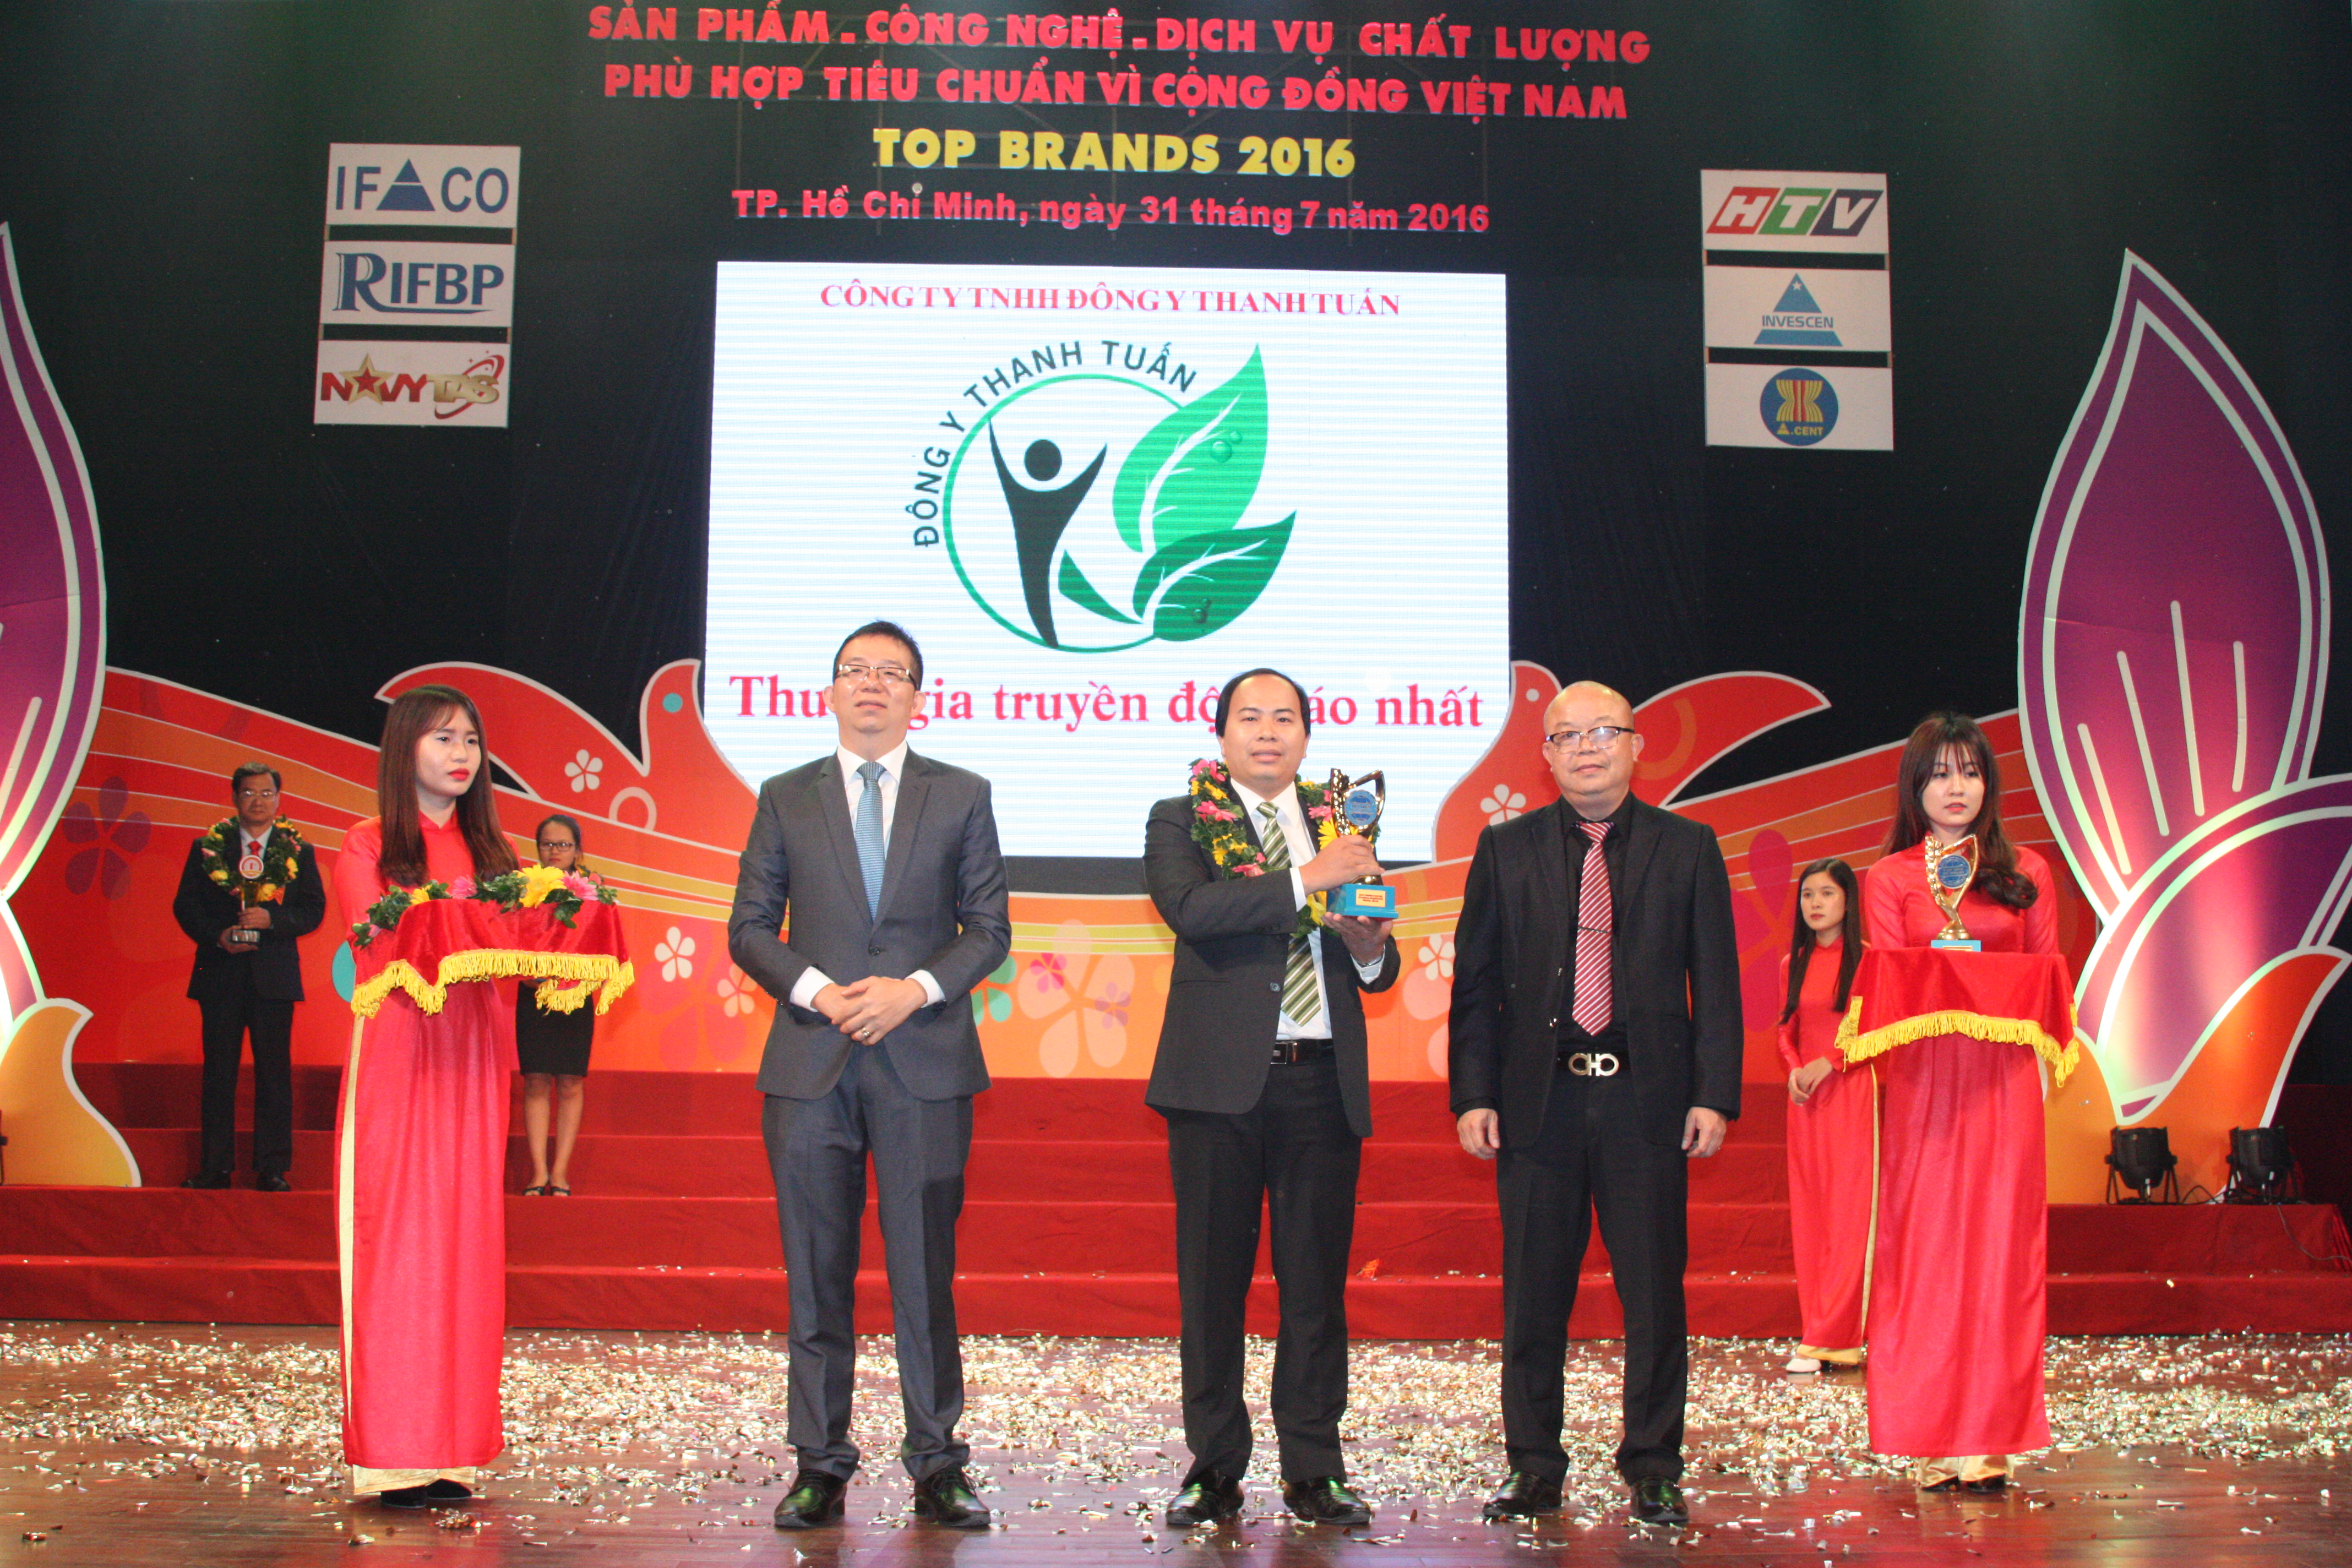 Đông y Thanh Tuấn nhận cup vàng thương hiệu an toàn vì sức khỏe cộng đồng